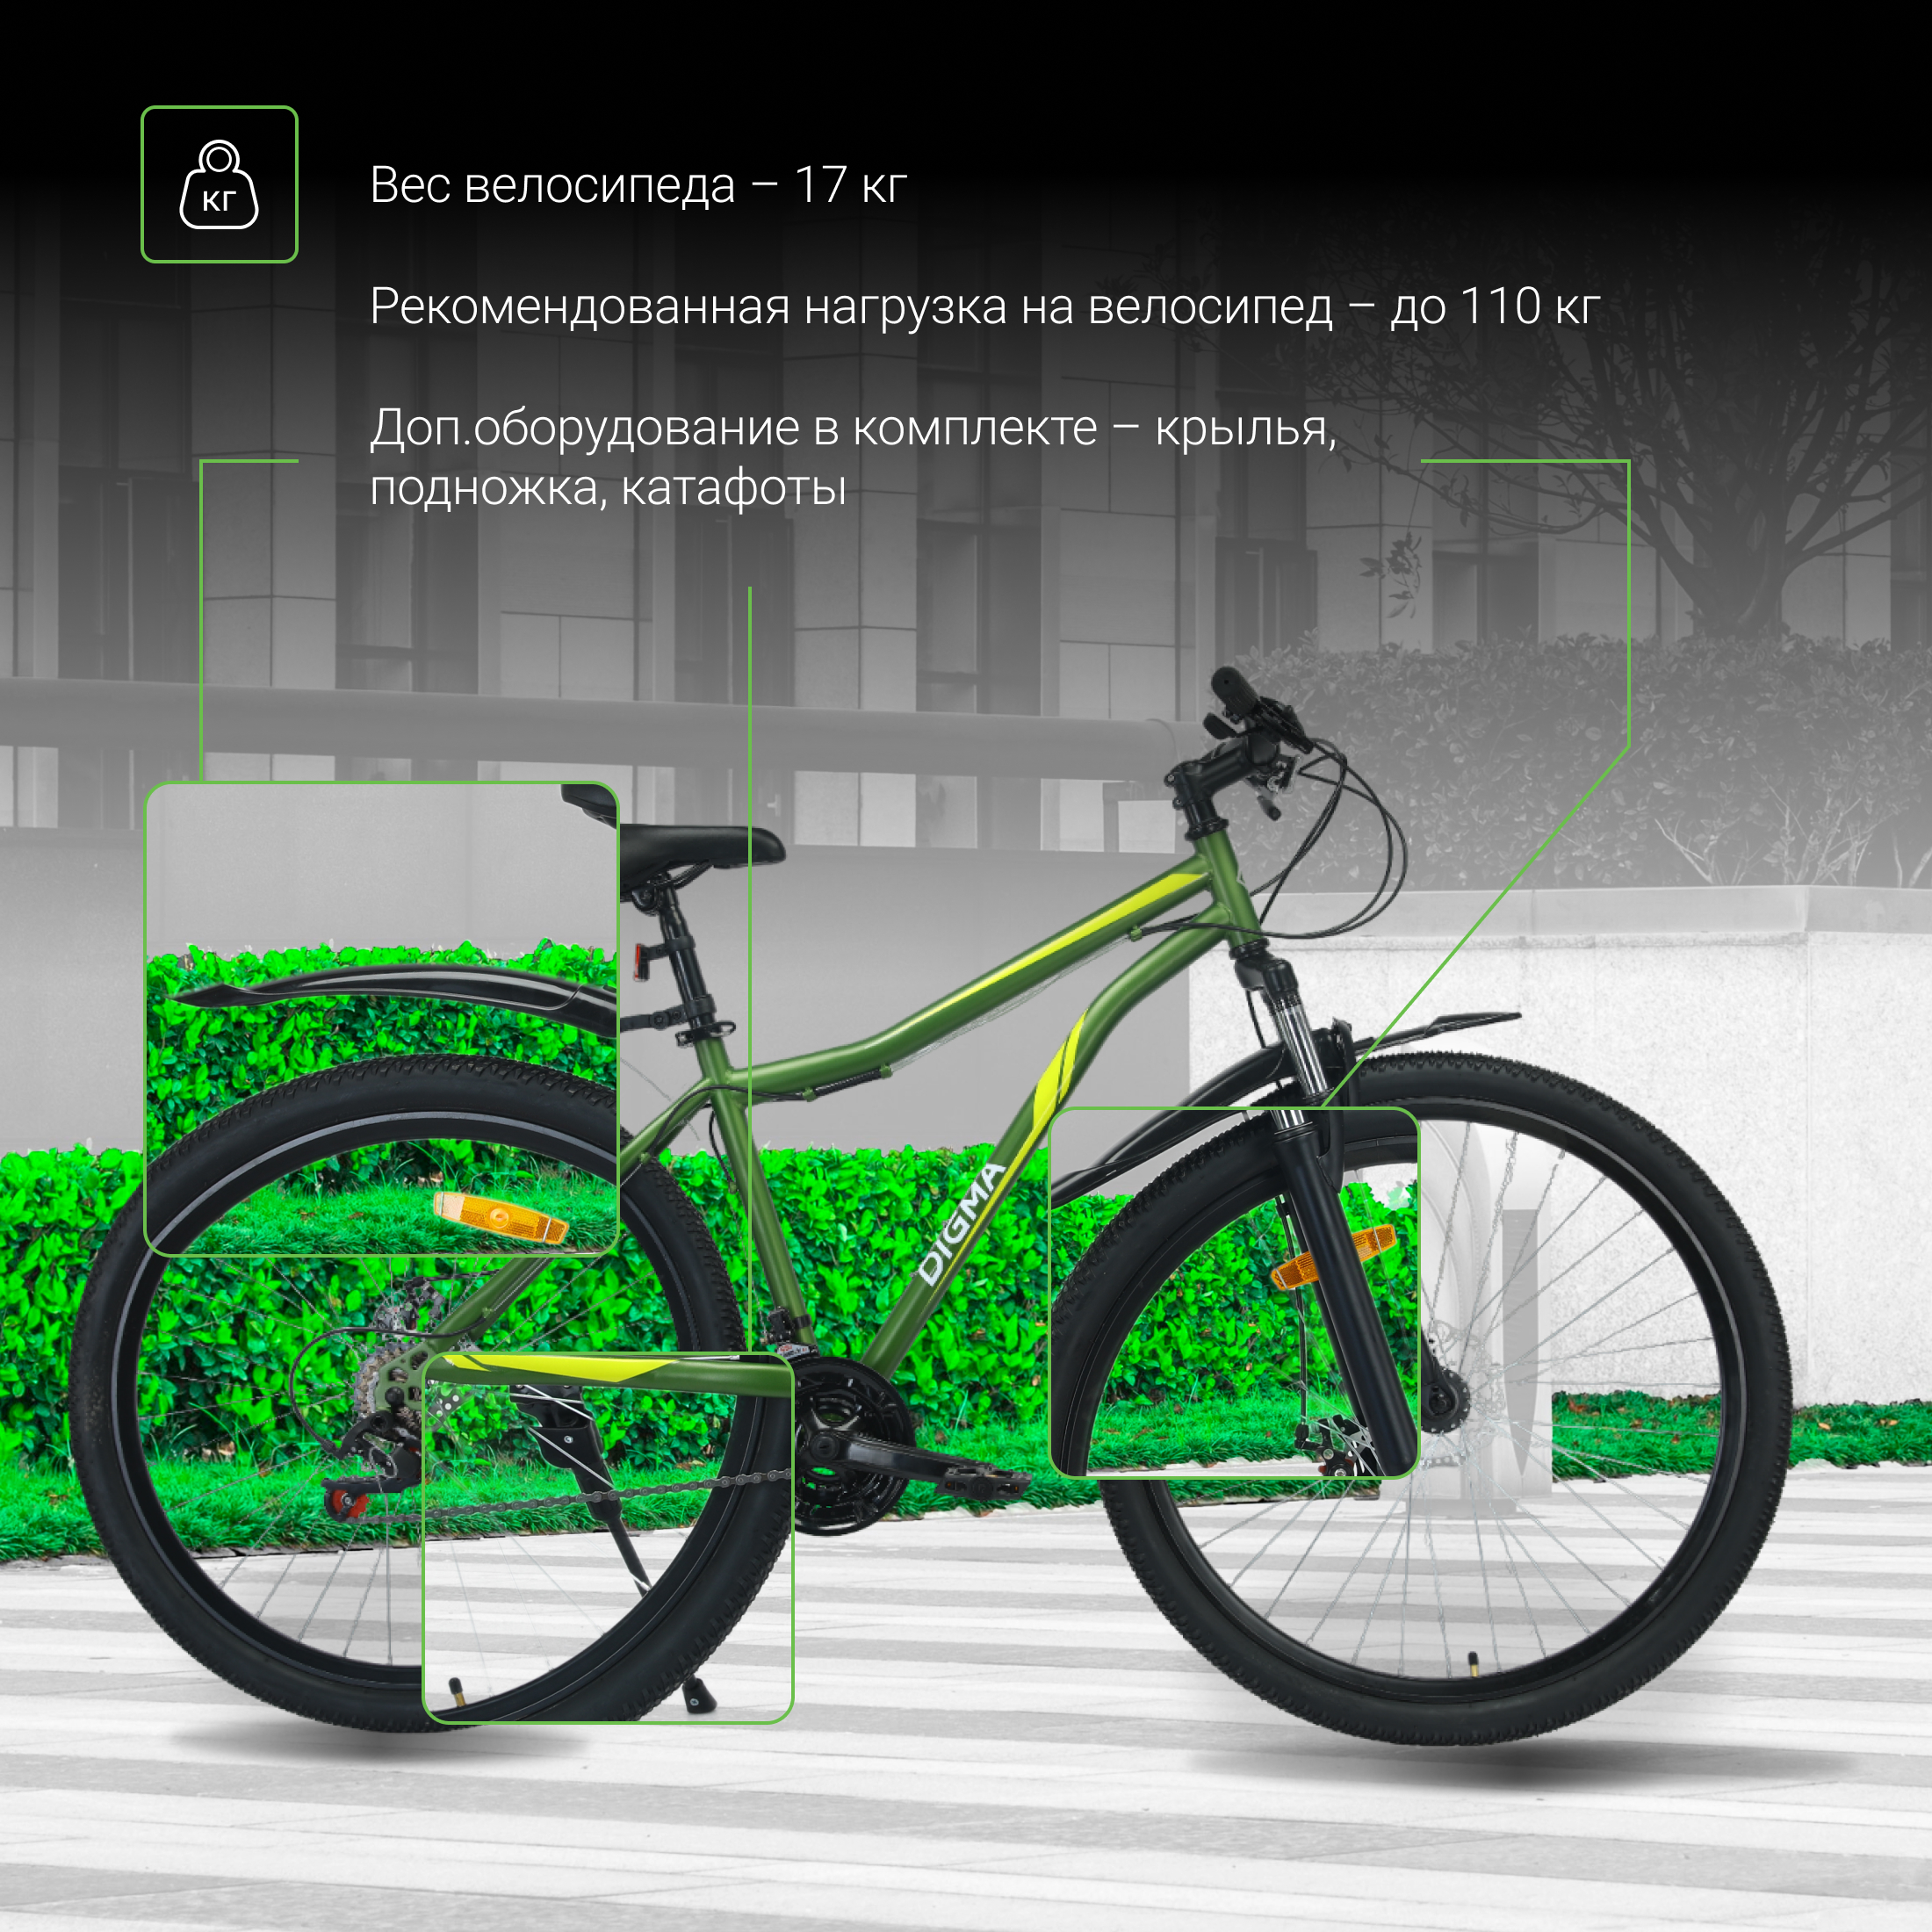 Велосипед Digma Big зеленый - фото 3